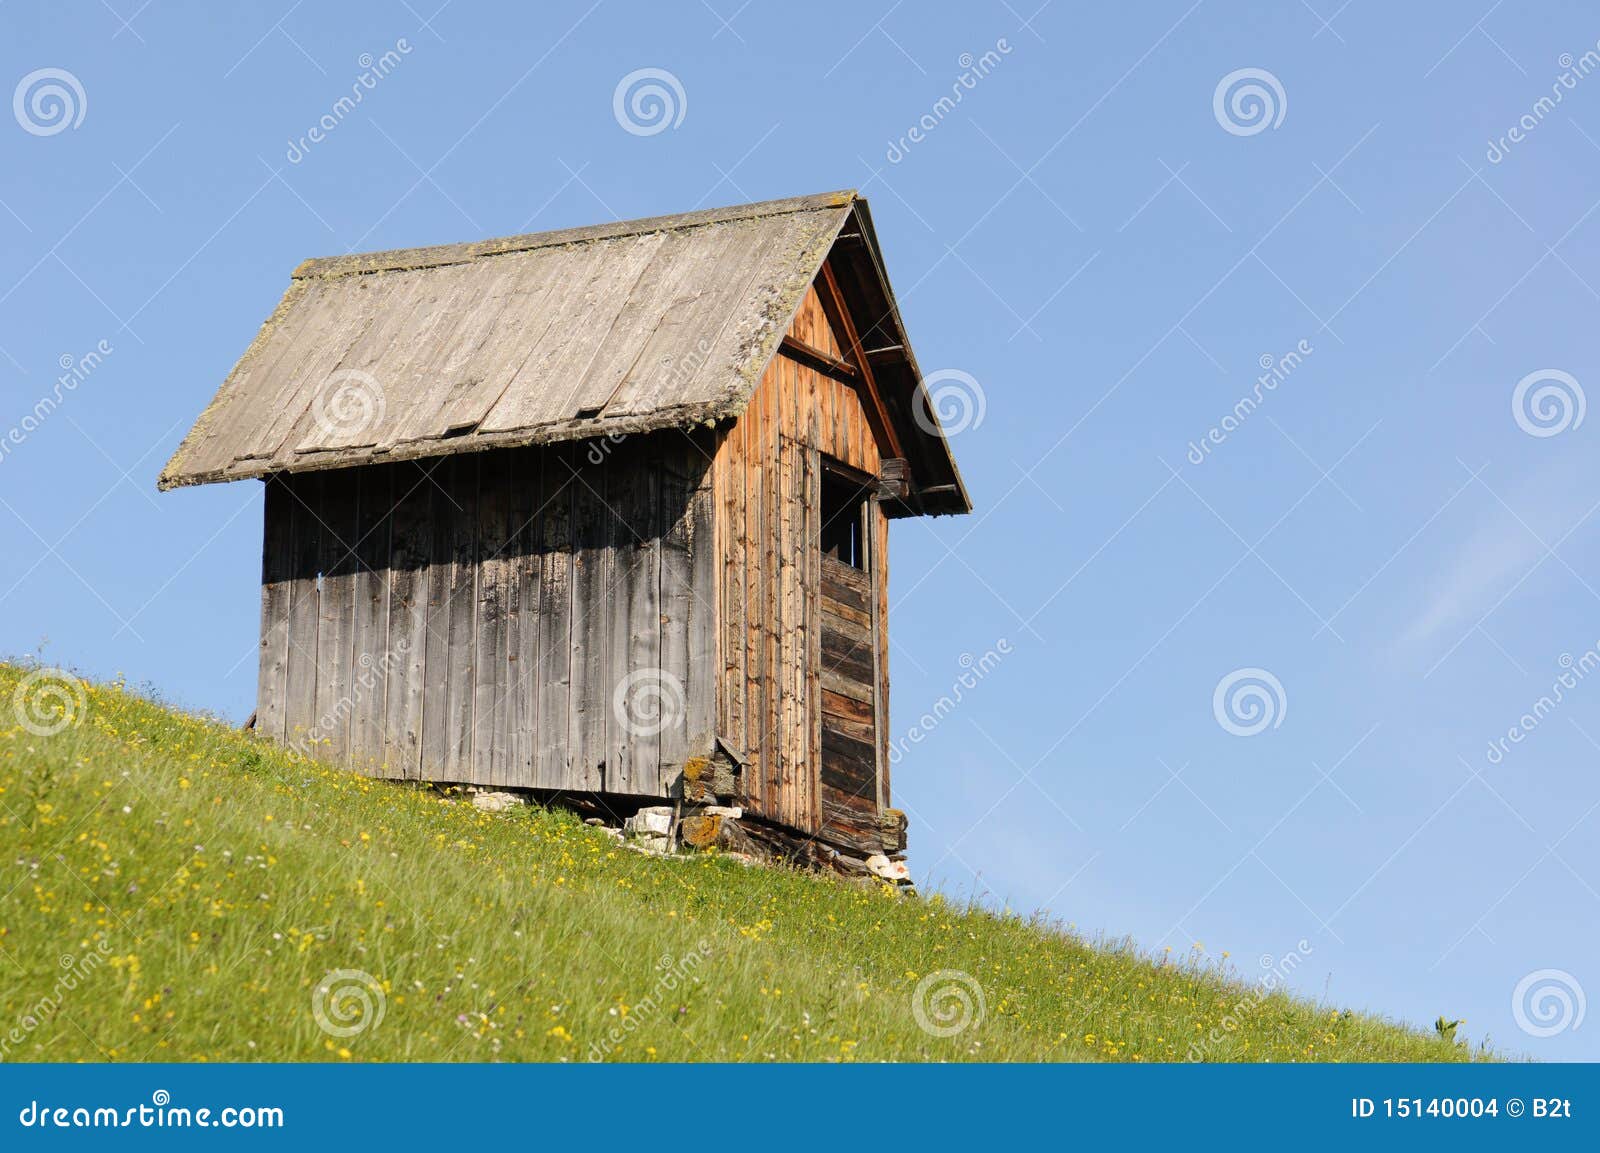 shed on hillside